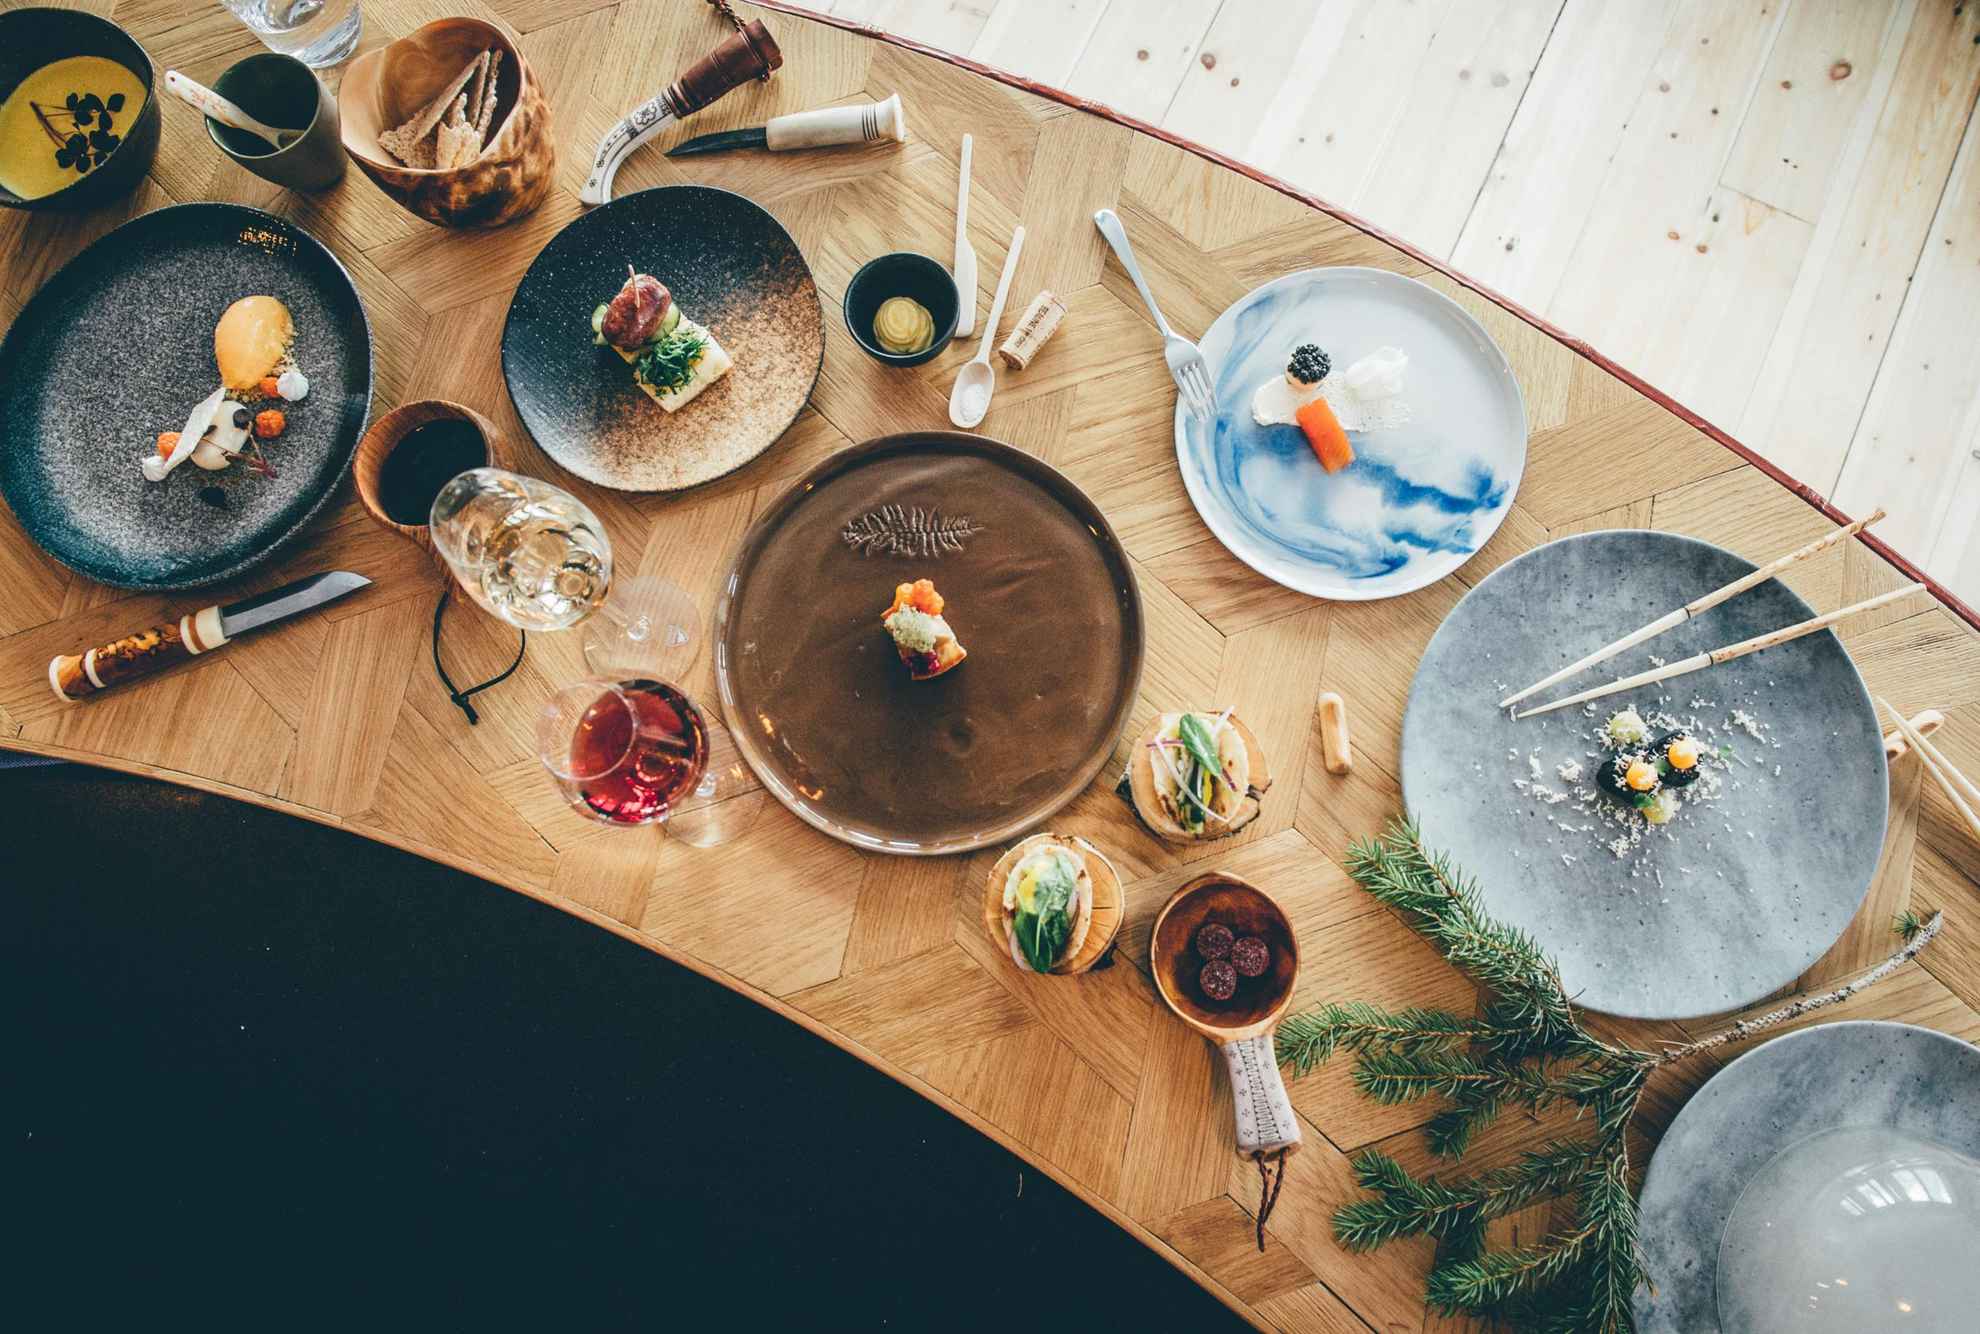 Une table en bois avec de la nourriture, des assiettes, des verres à vin et des couverts.